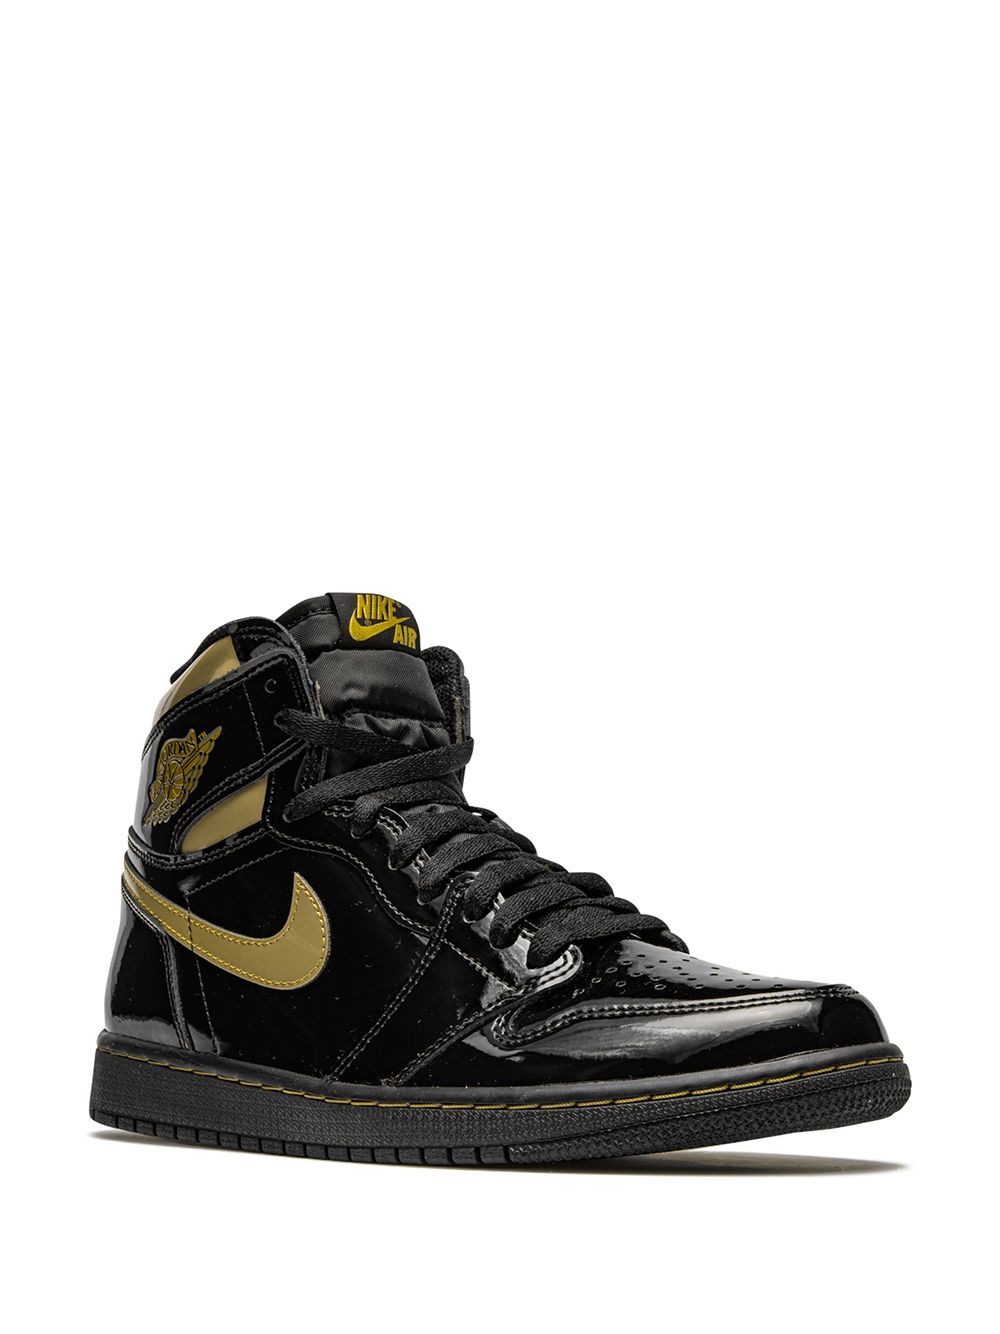 Air Jordan 1 High "Black Metallic Gold" sneakers